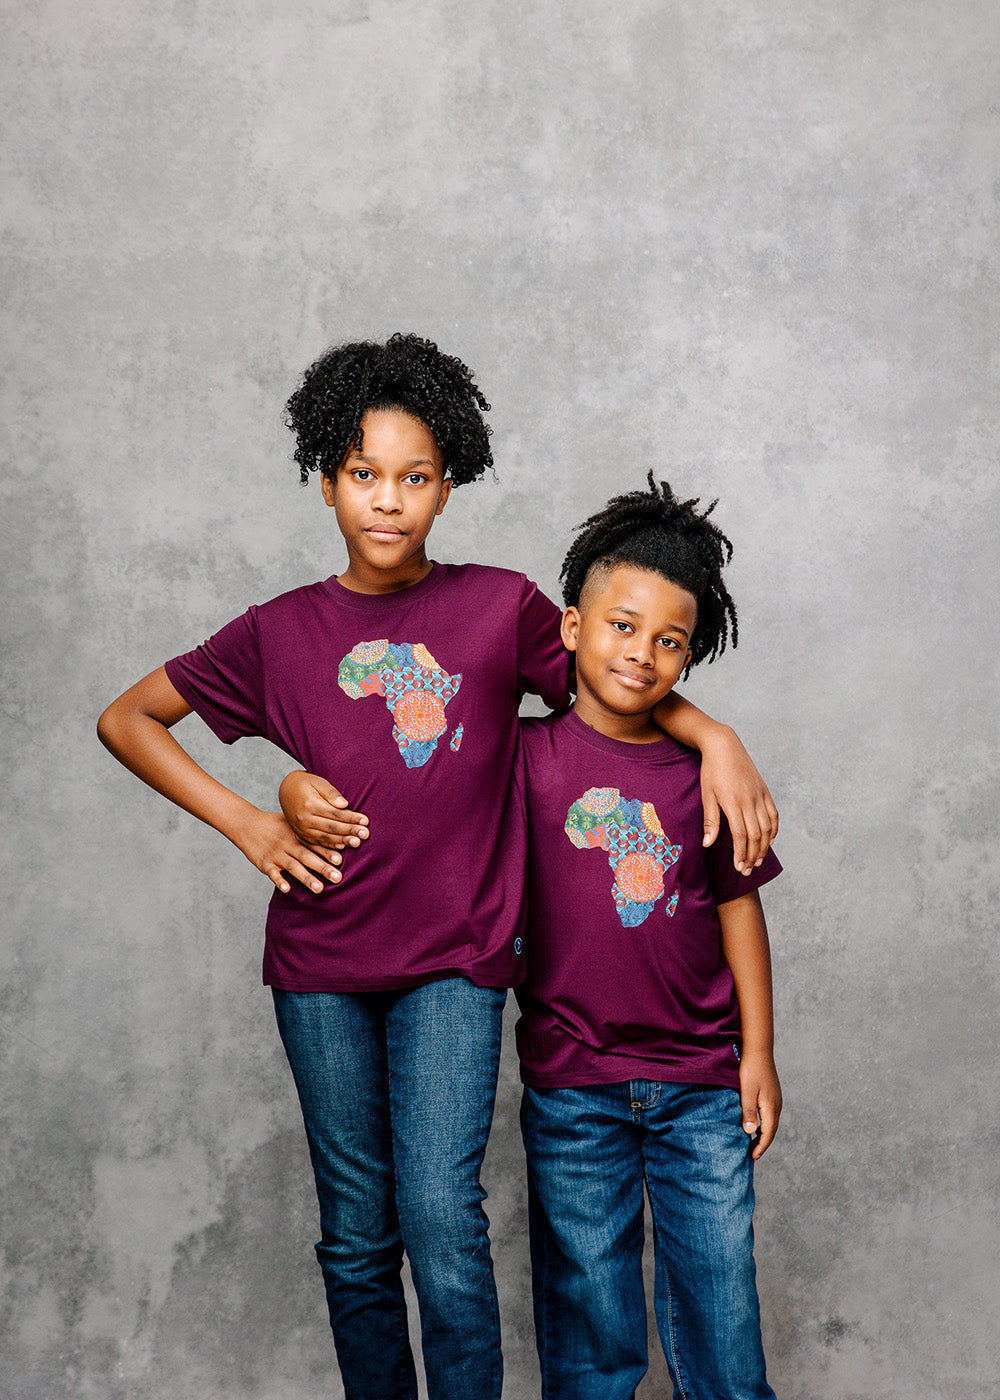 Bontu Kids' Unisex African Print Africa Map T-shirt (Plum/ New